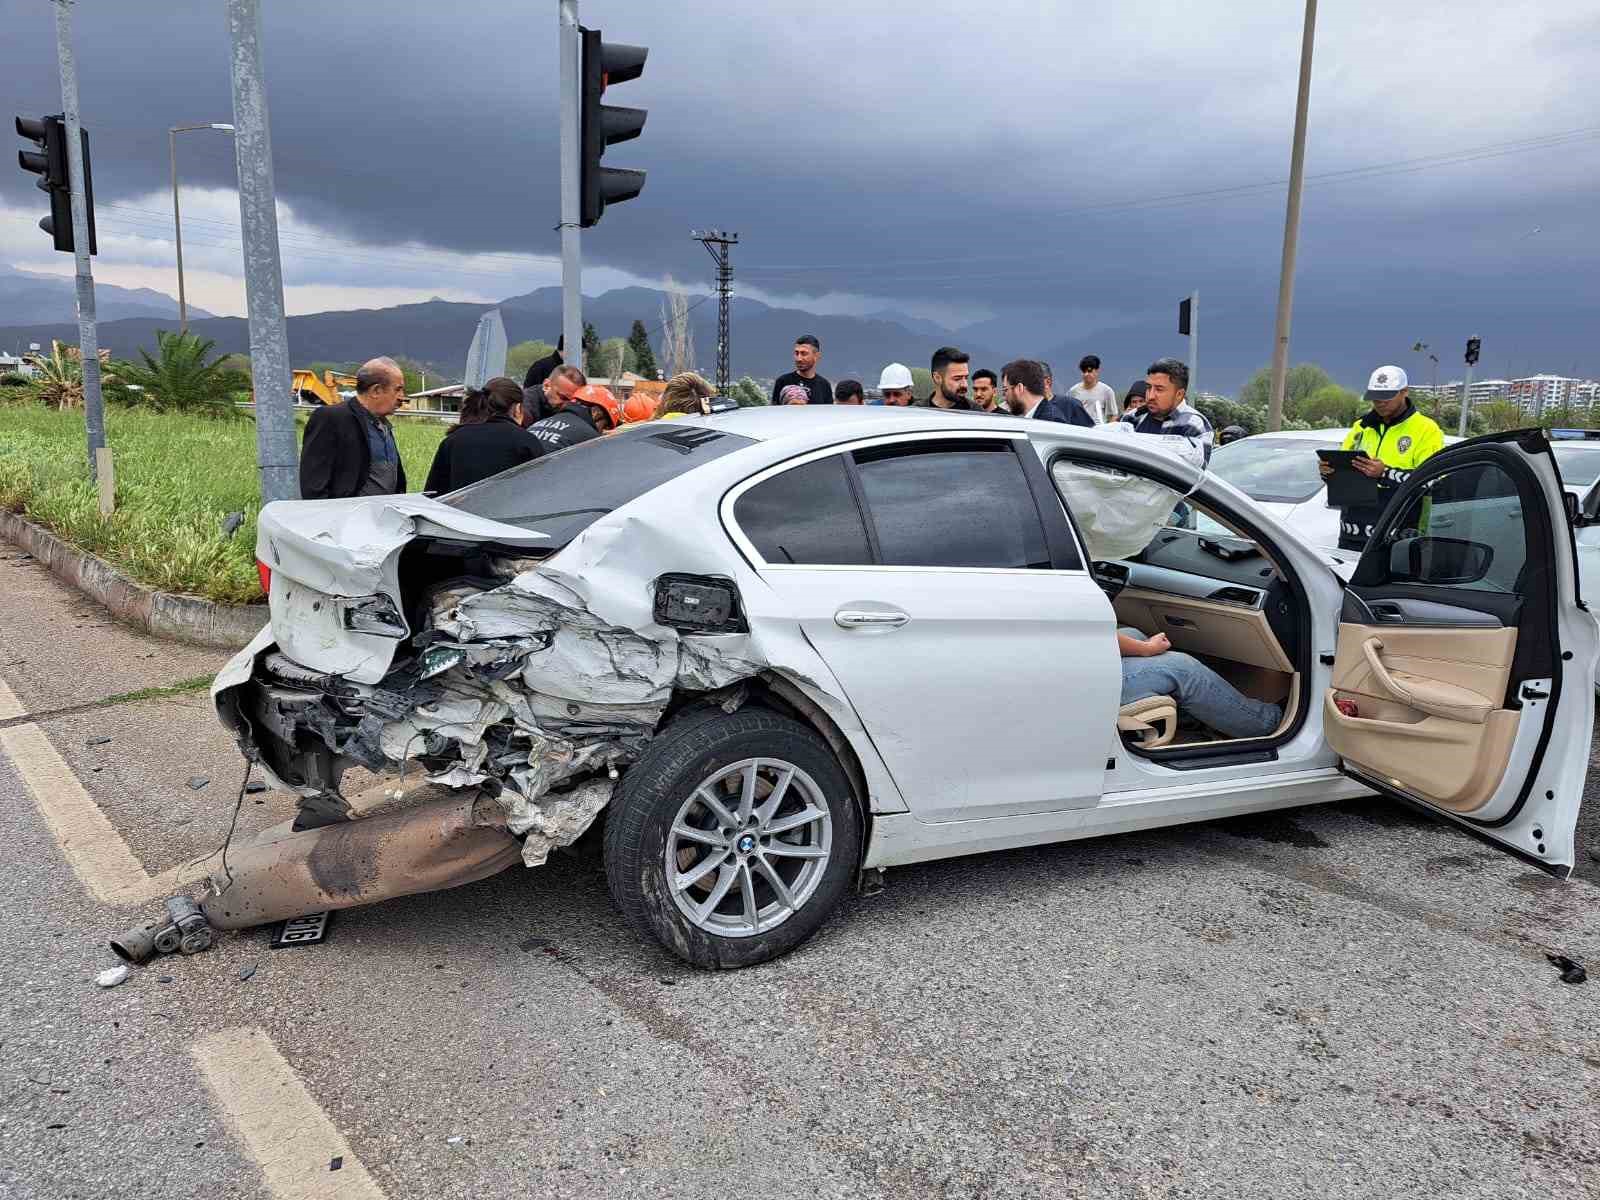 Hatay’da 3 aracın karıştığı kazada 7 kişi yaralandı
